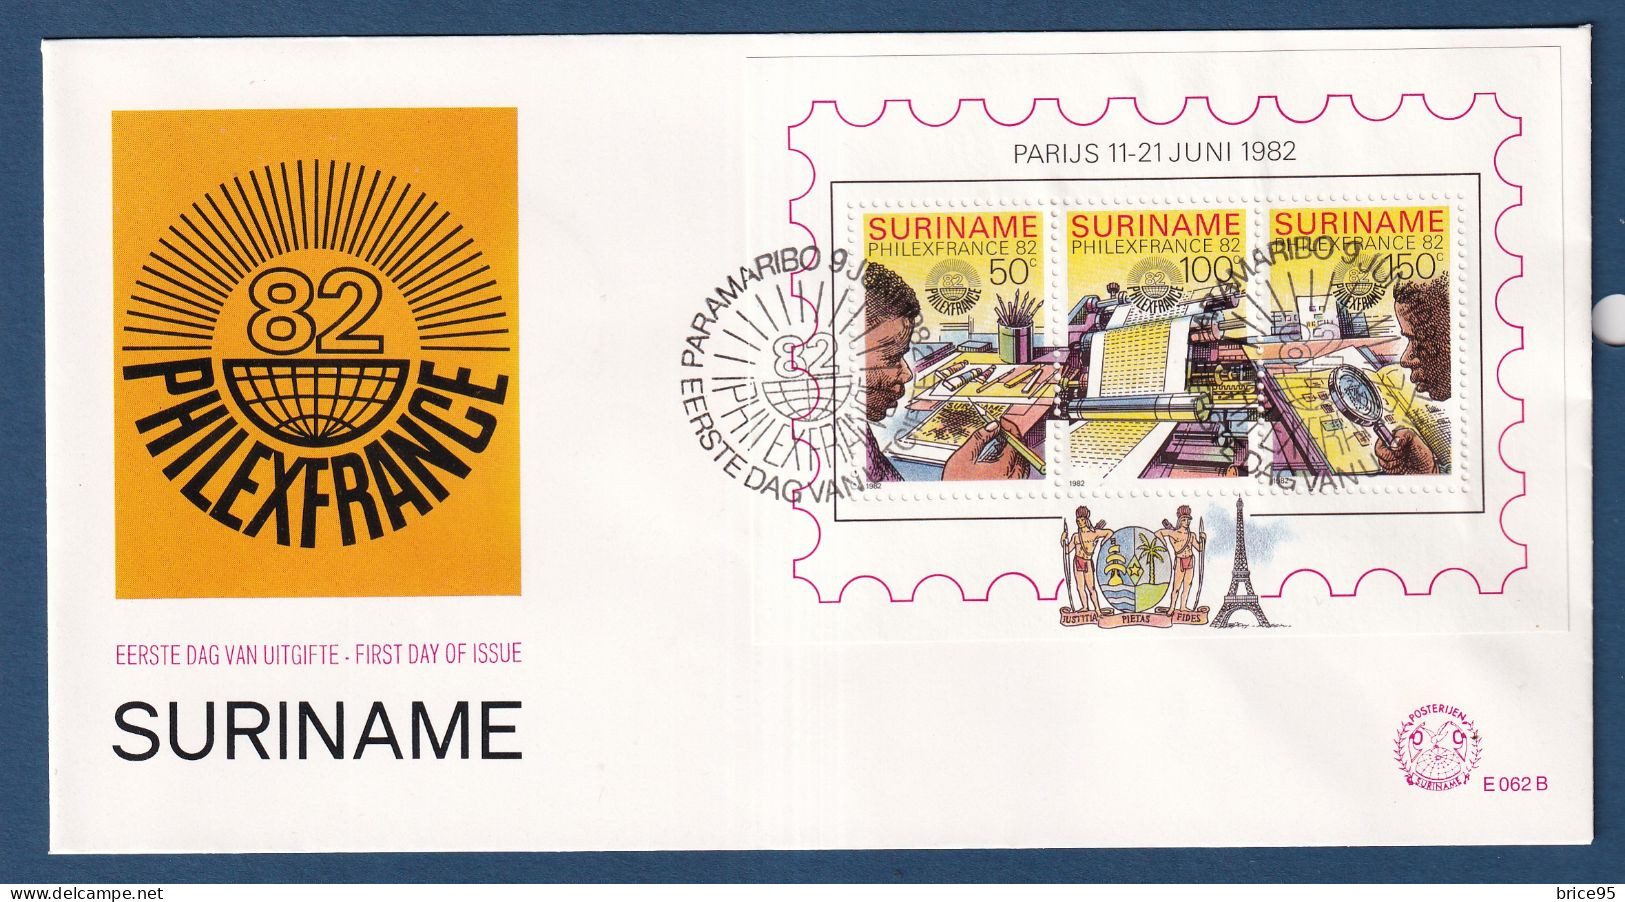 Surinam - FDC - Premier Jour - PhilexFrance 82 - 1982 - Suriname